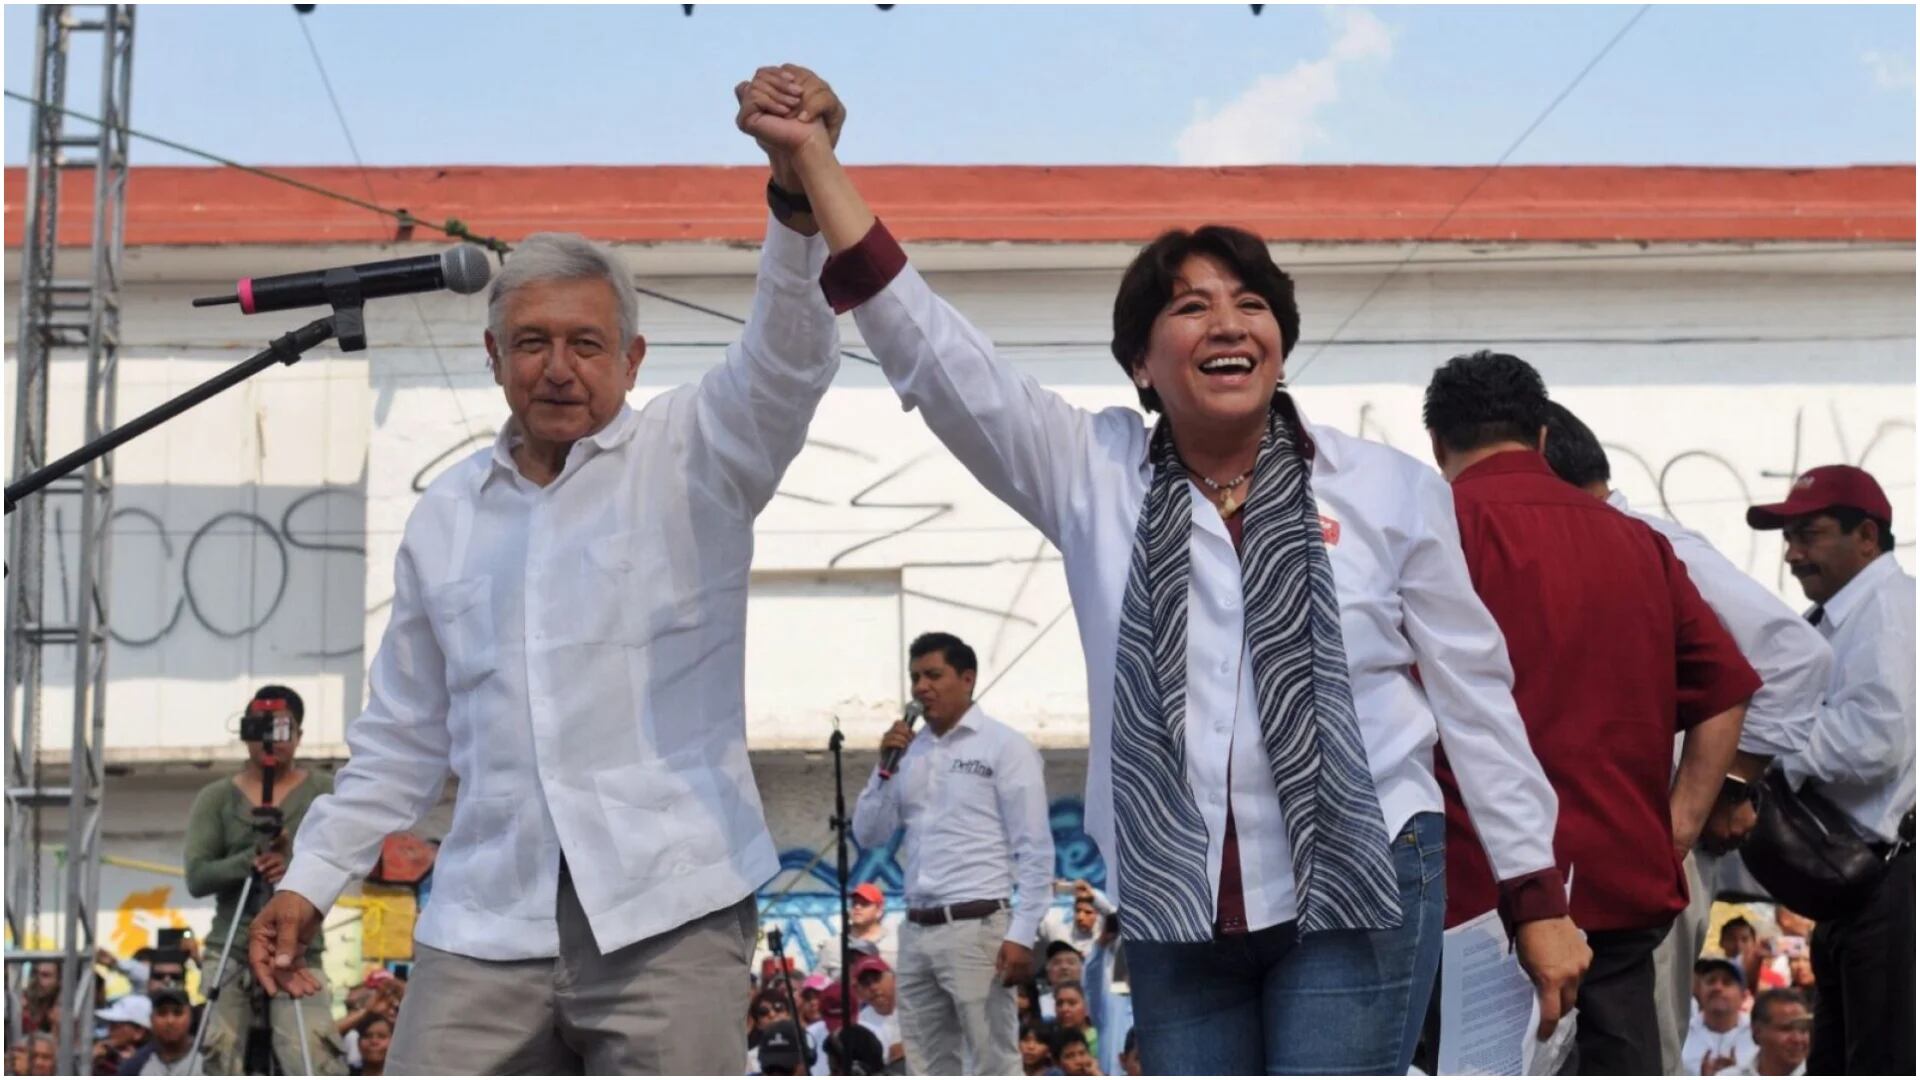 Mexiquenses le piden reelección a AMLO, él responde ante la insistencia: ‘eso no, eso no”